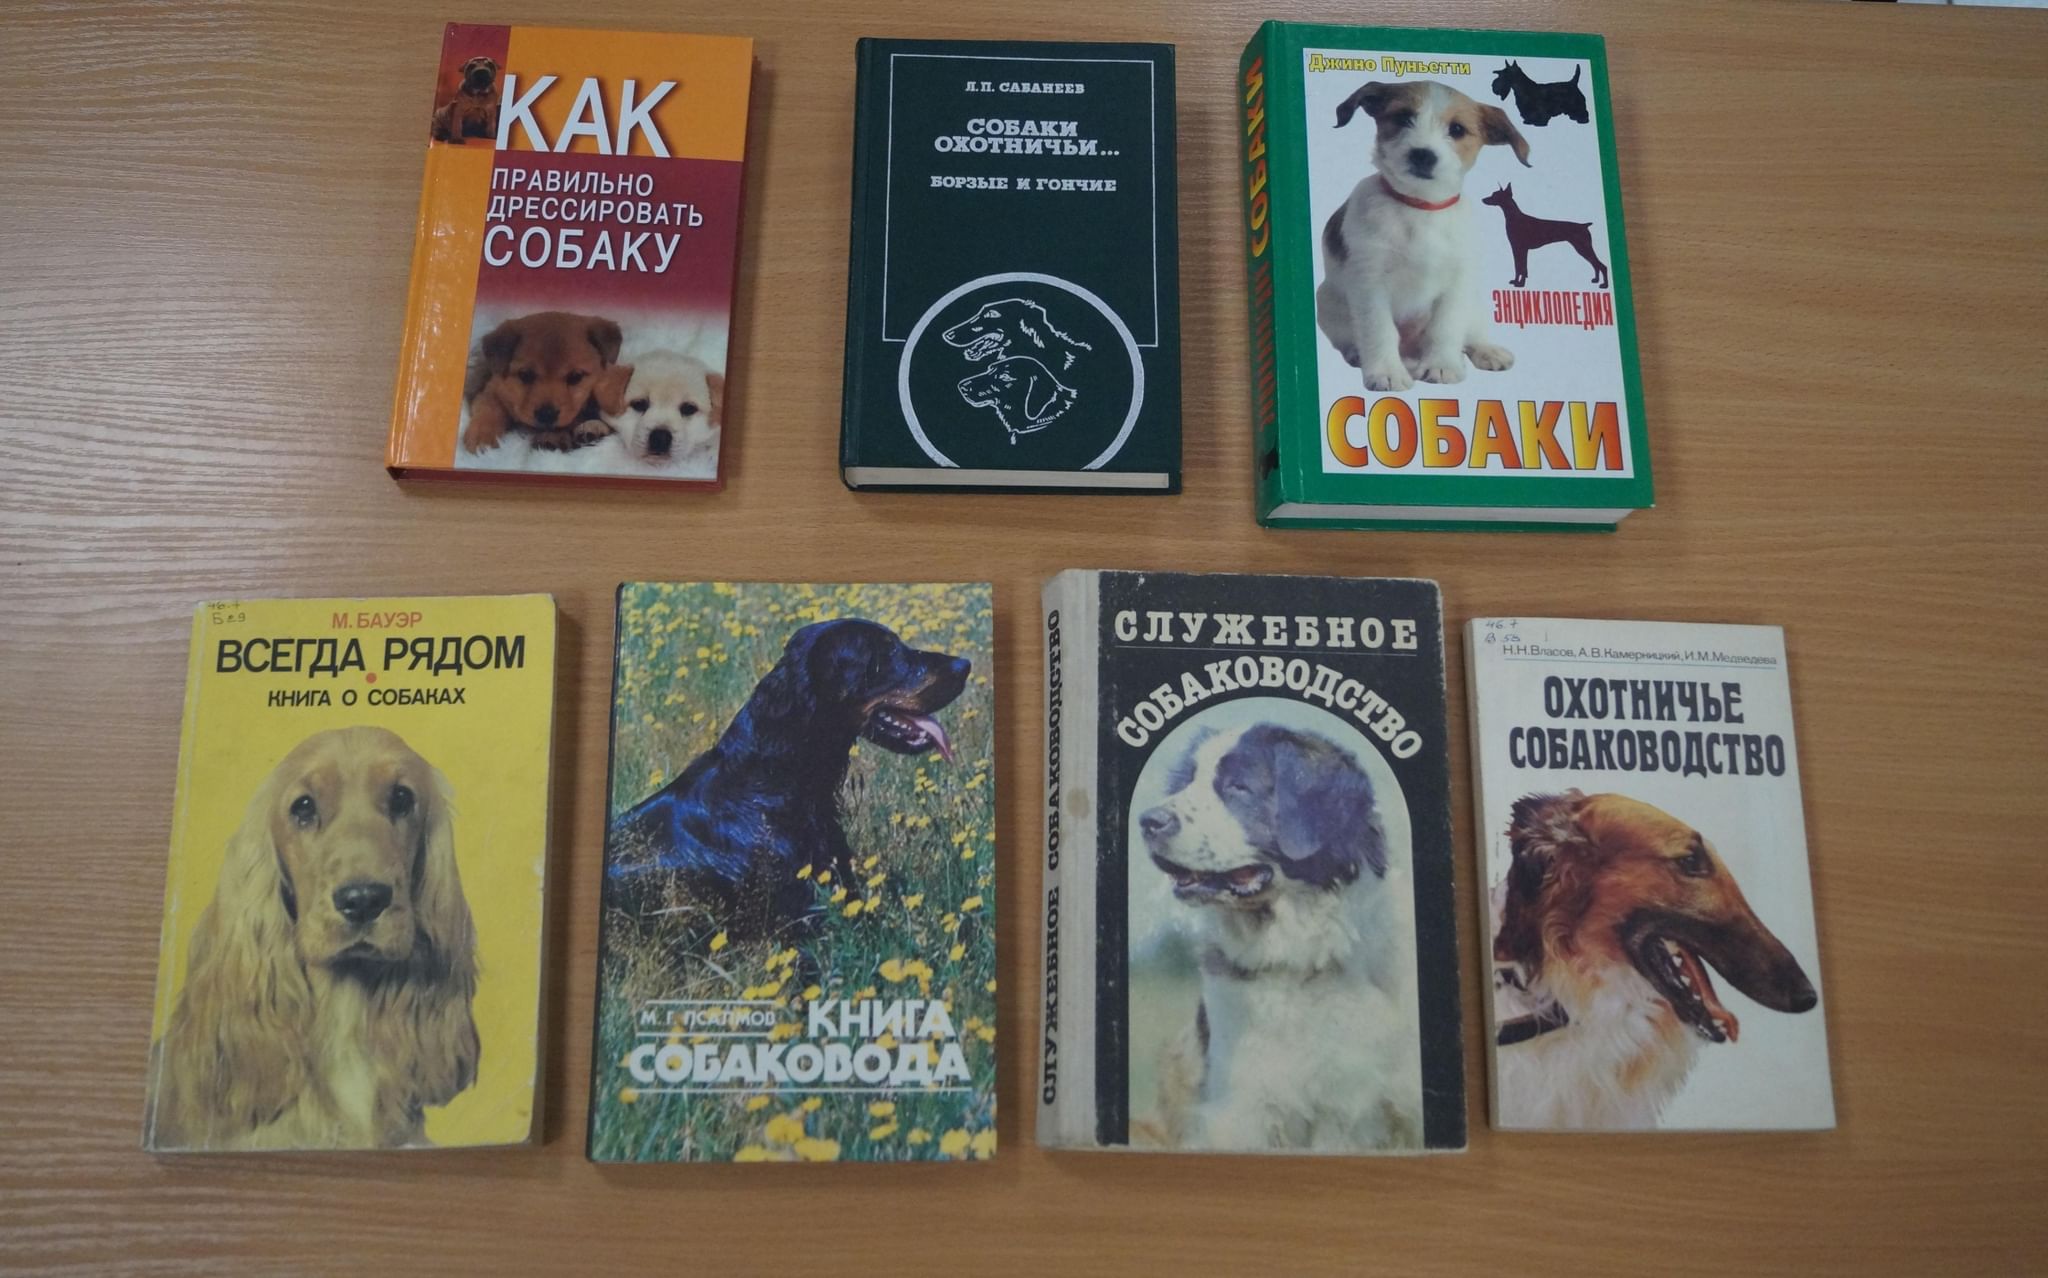 Даты выставок собак. Книжная выставка про собак. Выставка книг о собаках. Выставка собак название. Книги руководство по выставке собак.